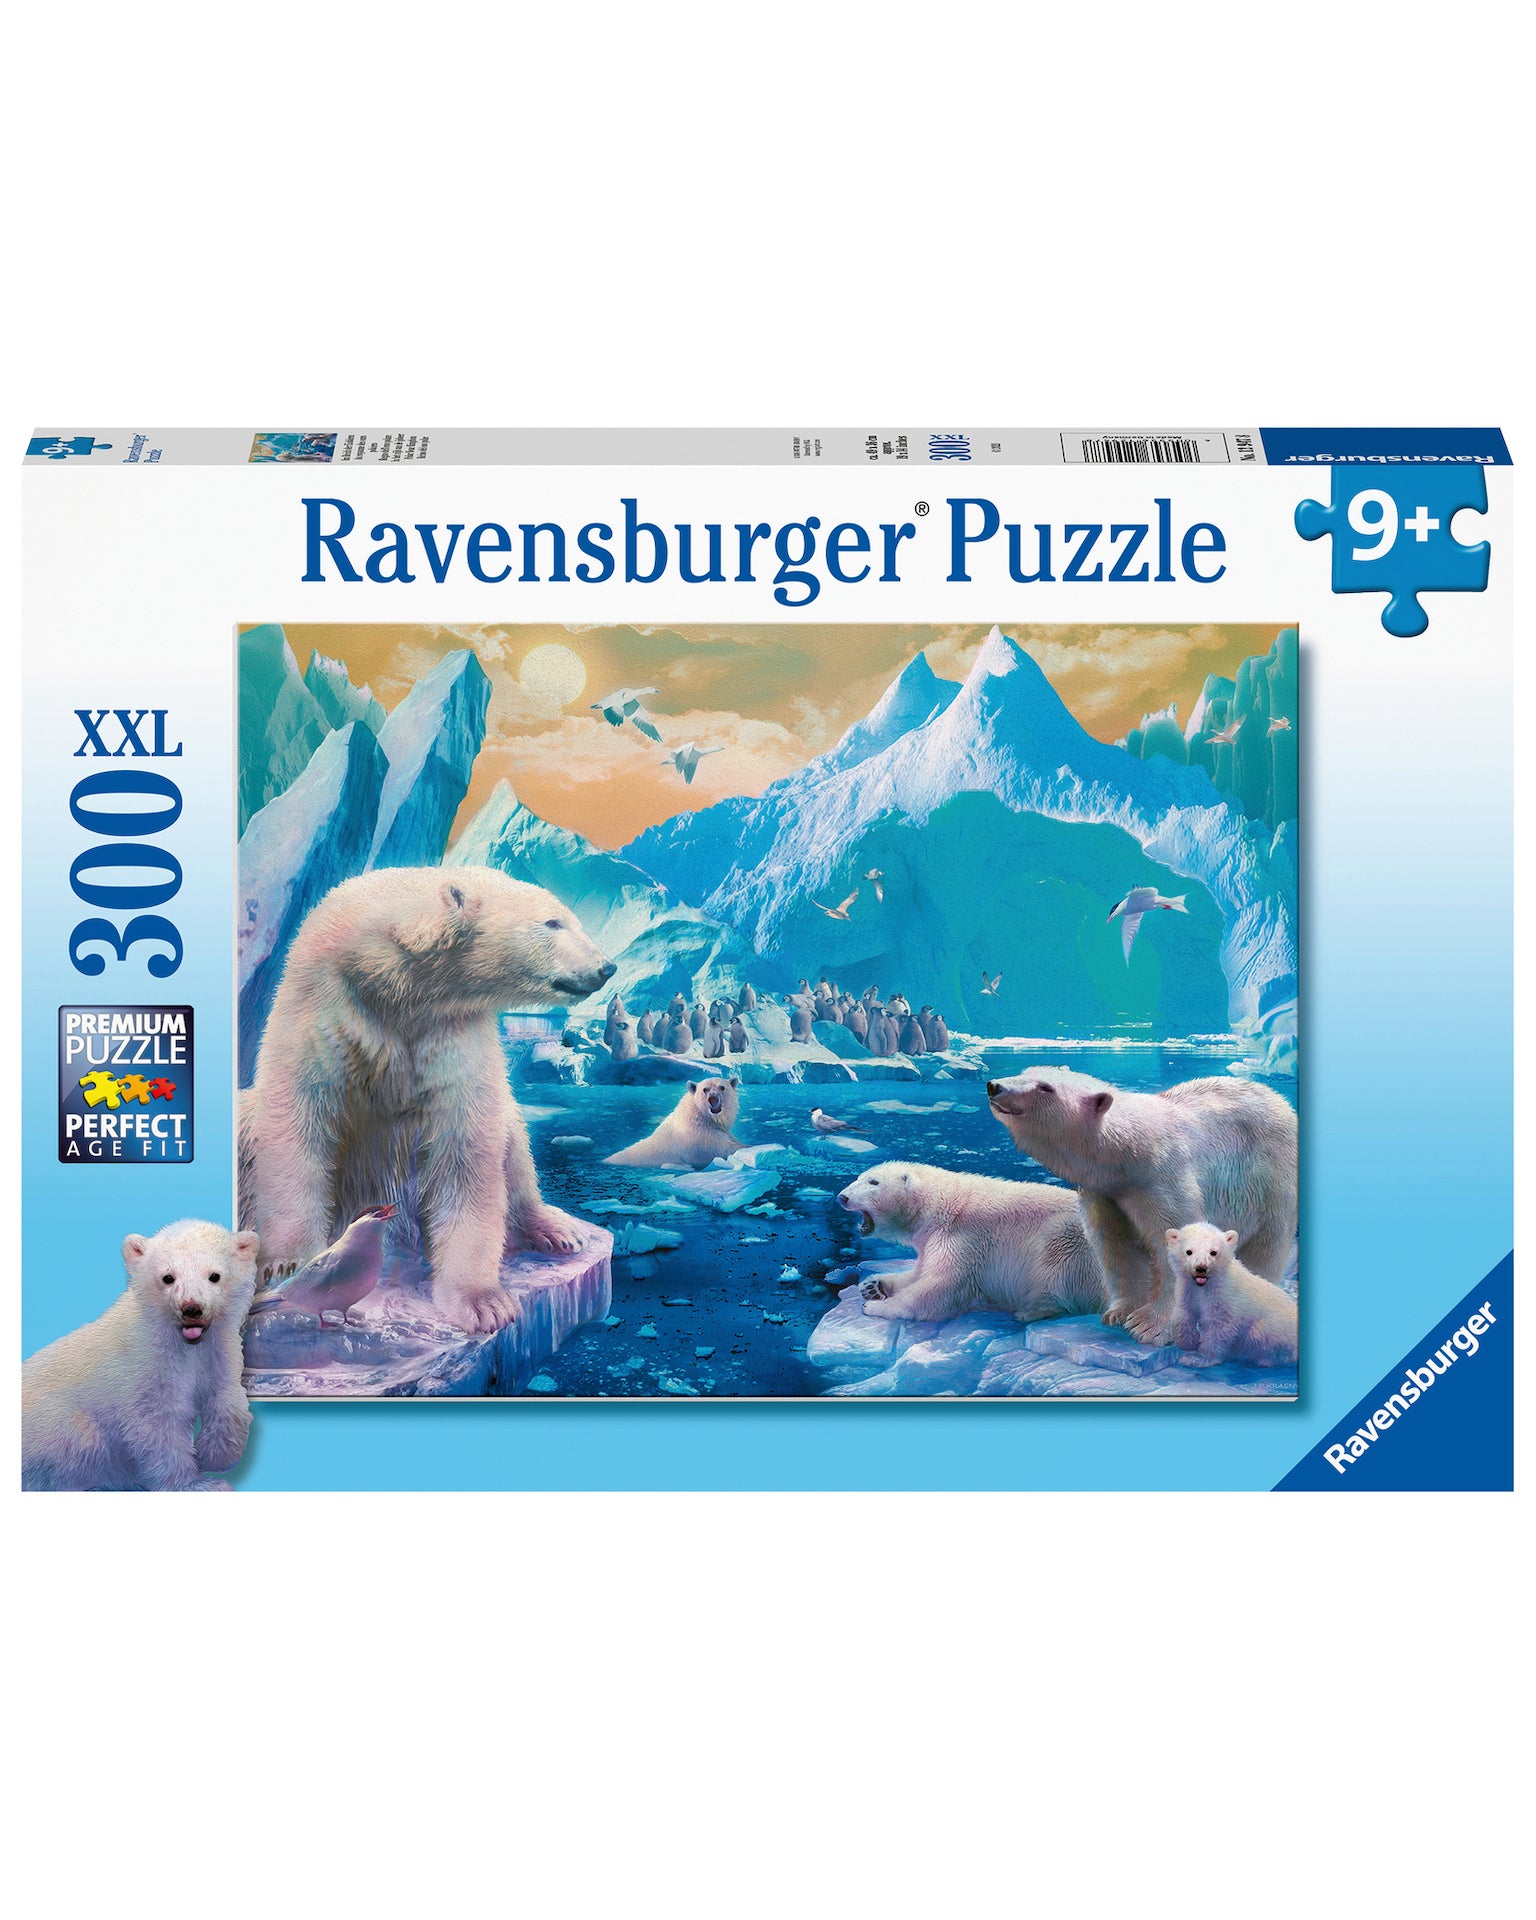 Ravensburger Puzzle - Polar Bear Kingdom 300pc